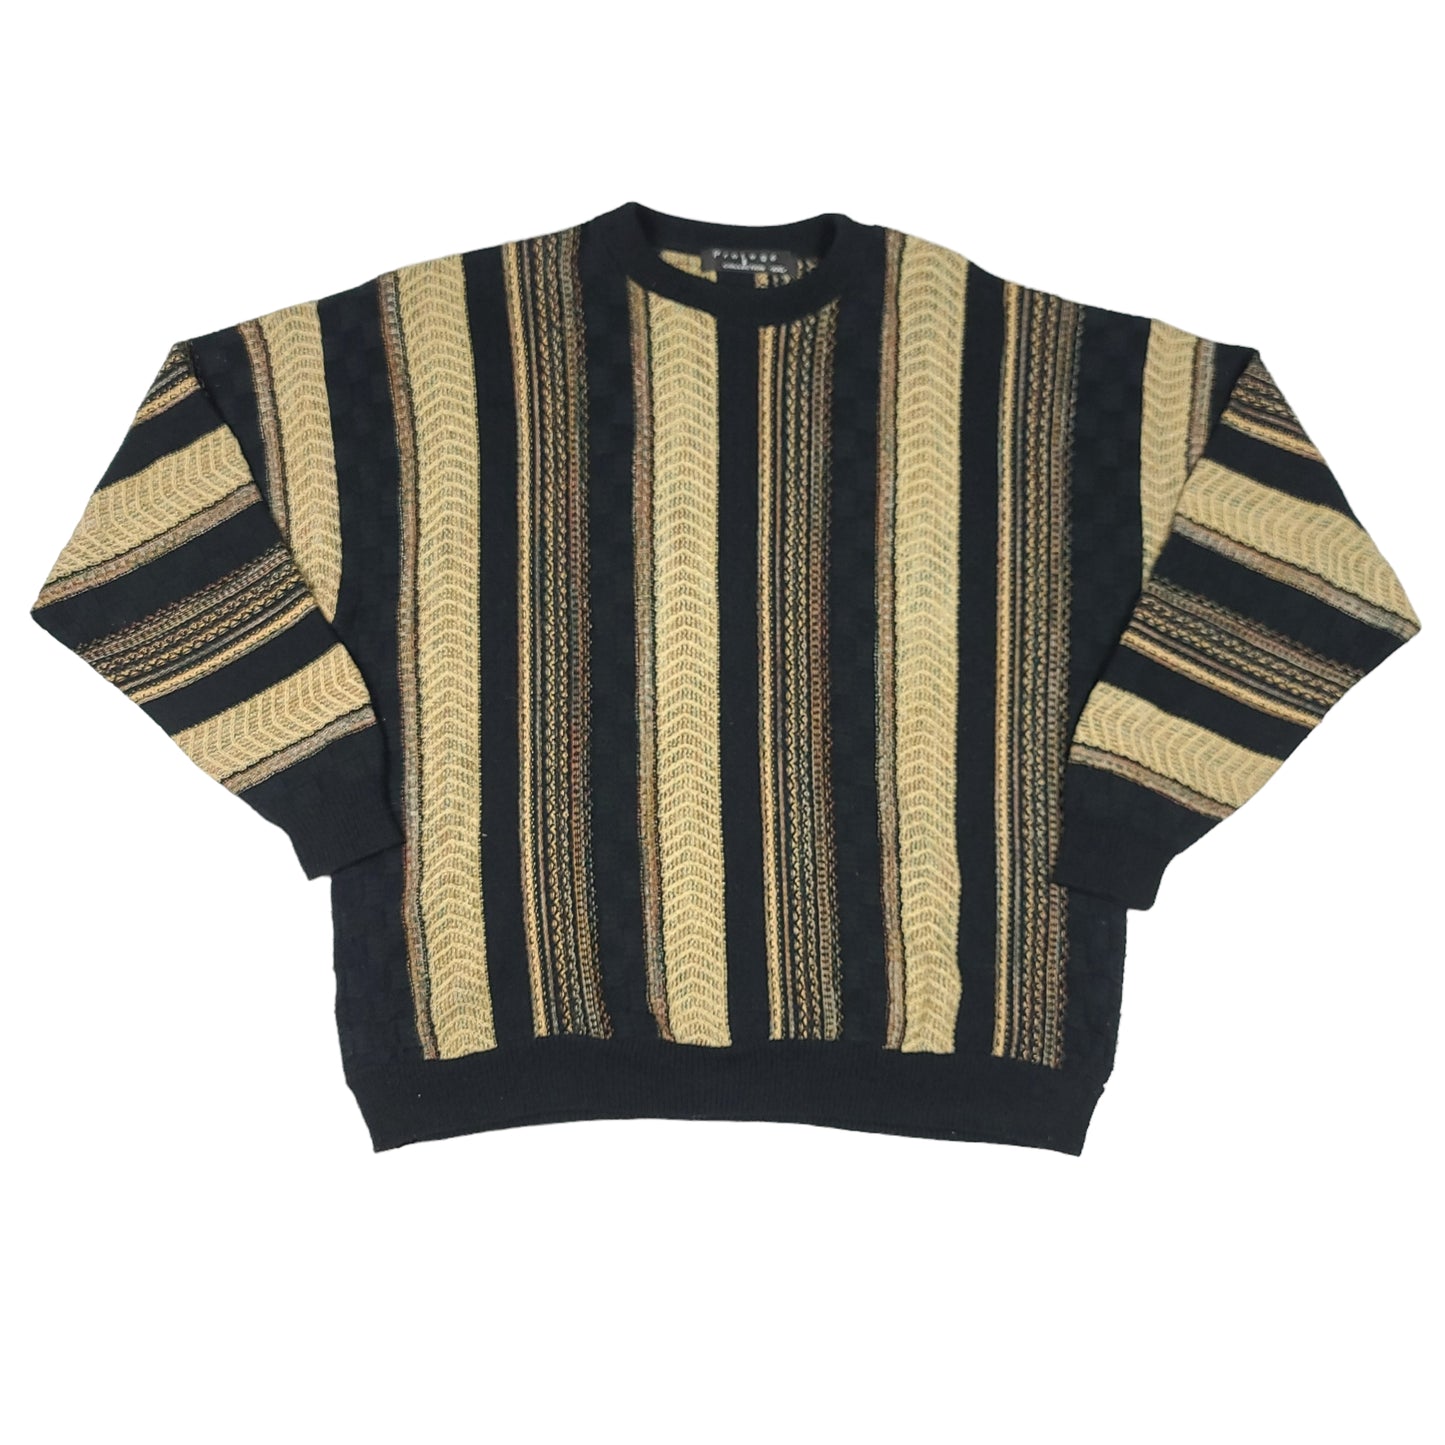 Protoge Black & Beige Coogi Style Sweatshirt